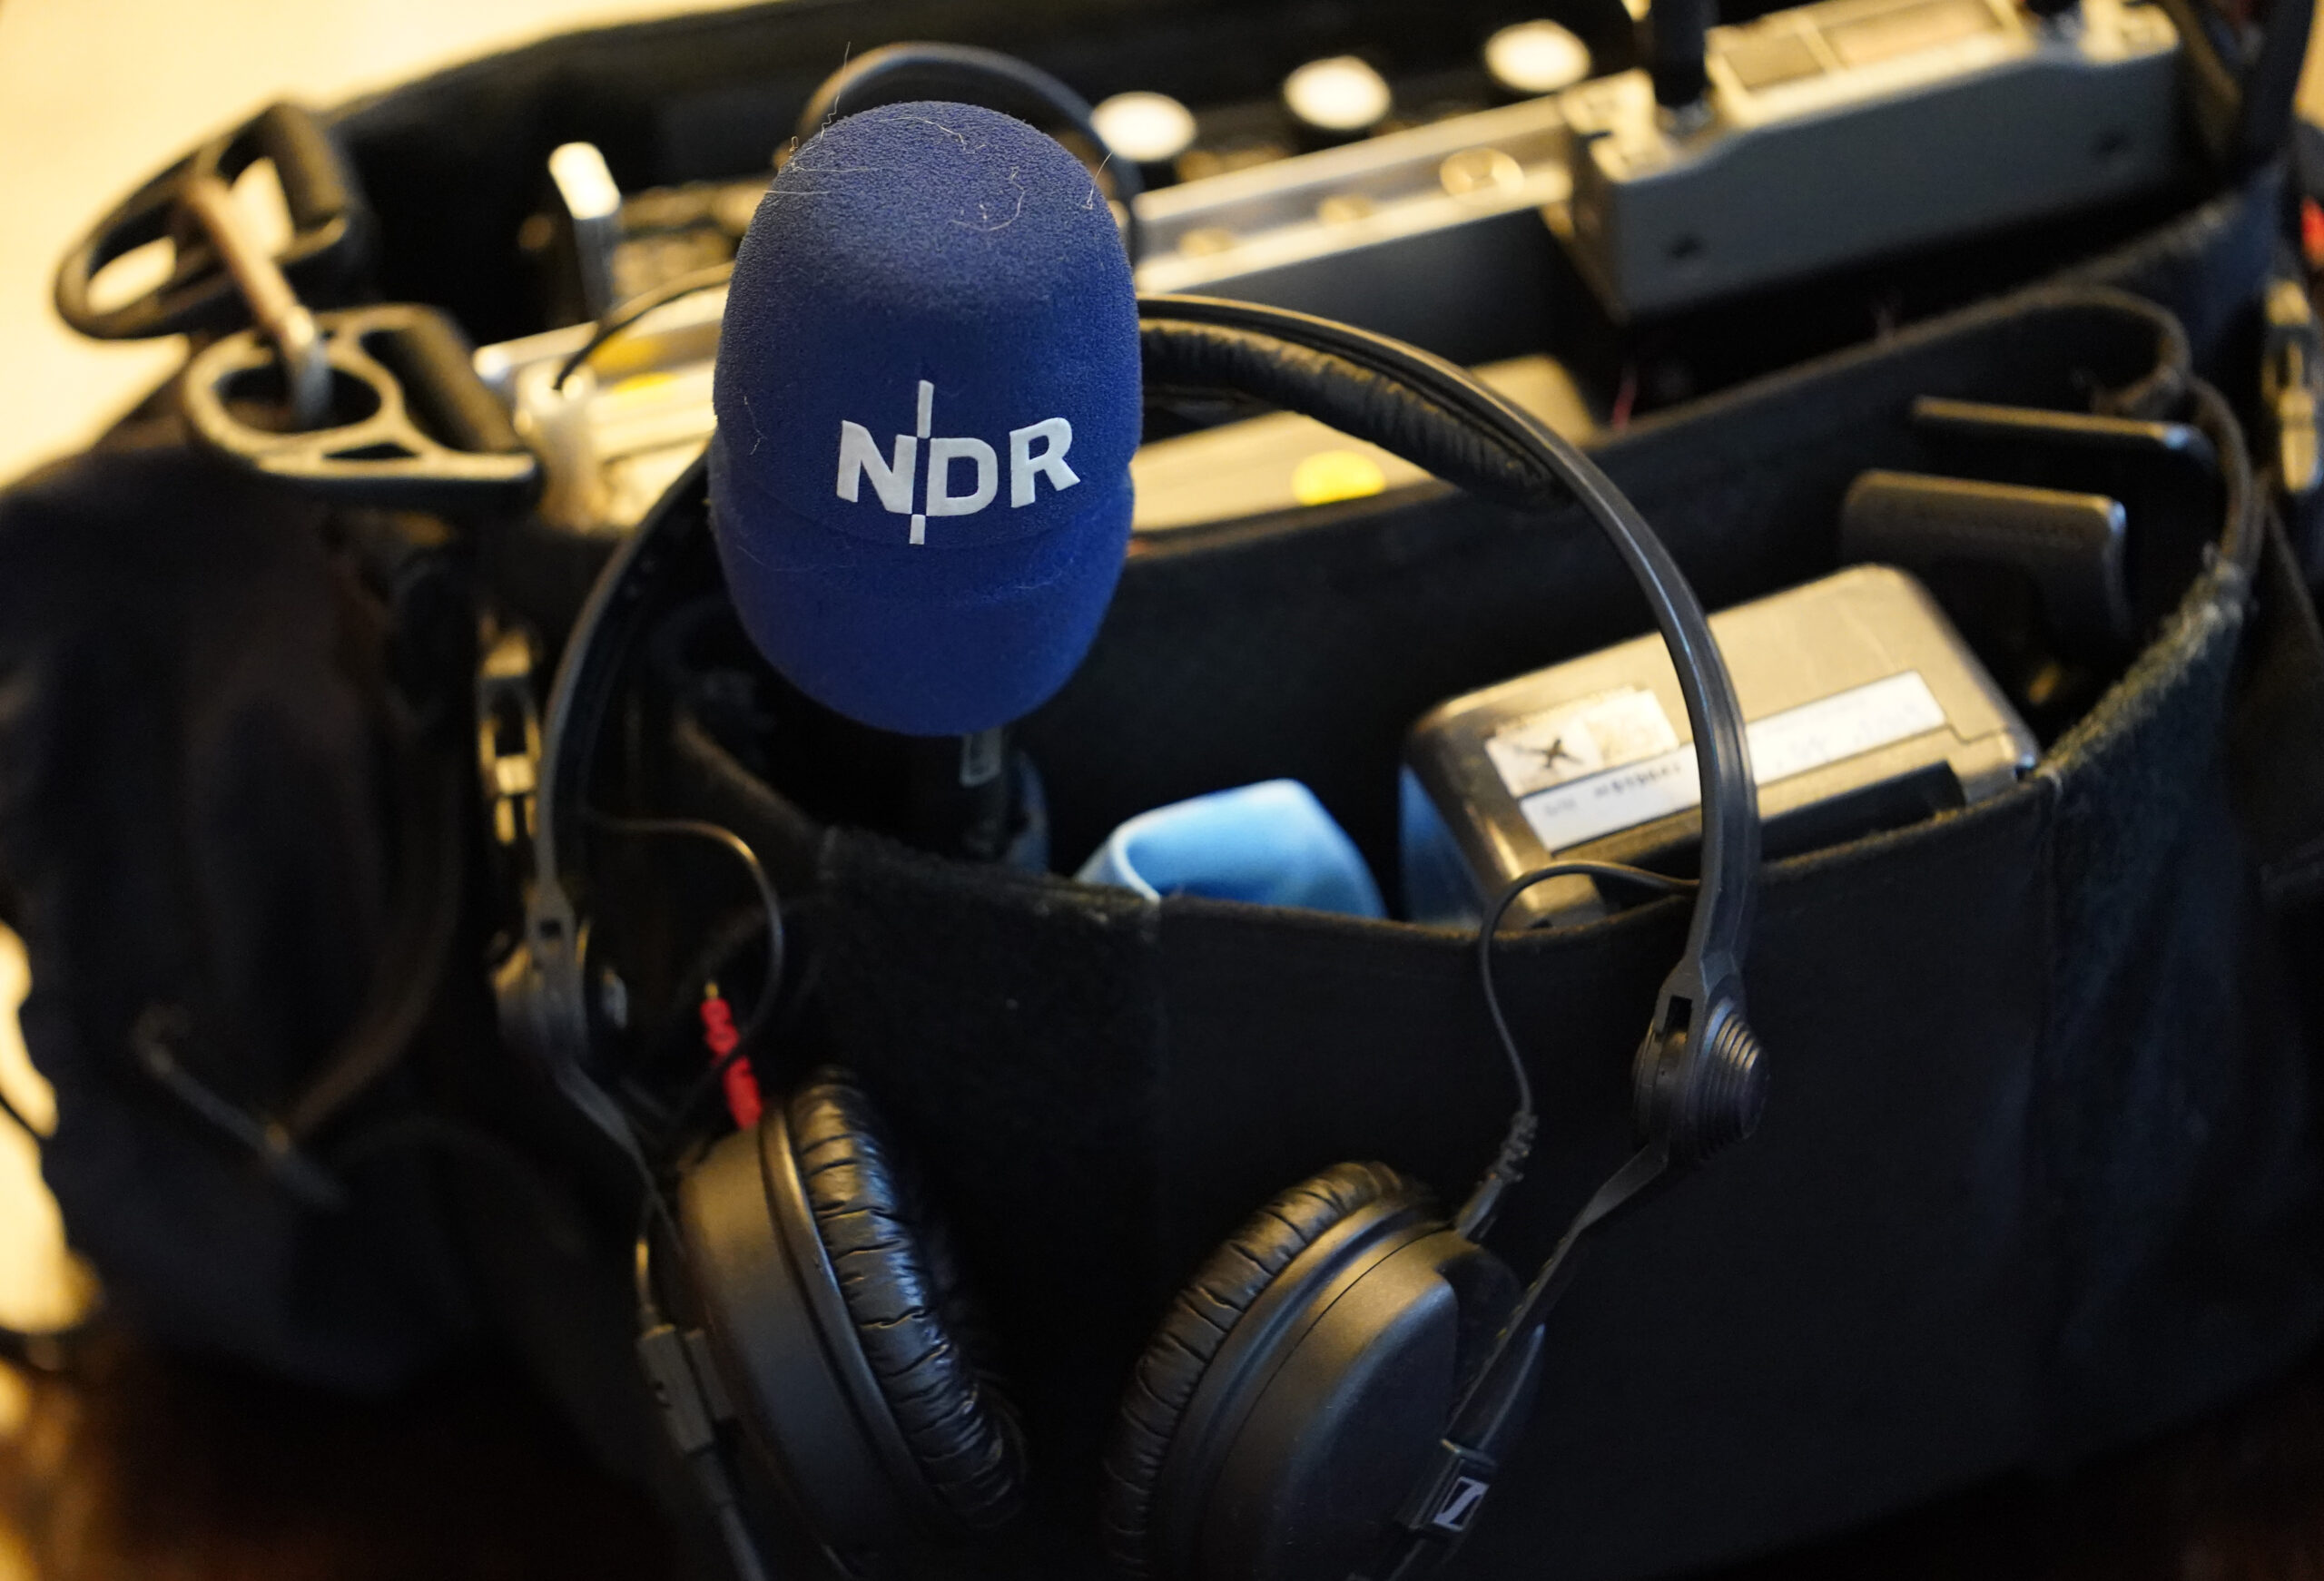 Das NDR-Logo ist auf einem Mikrofon während eines Medientermins zu sehen.